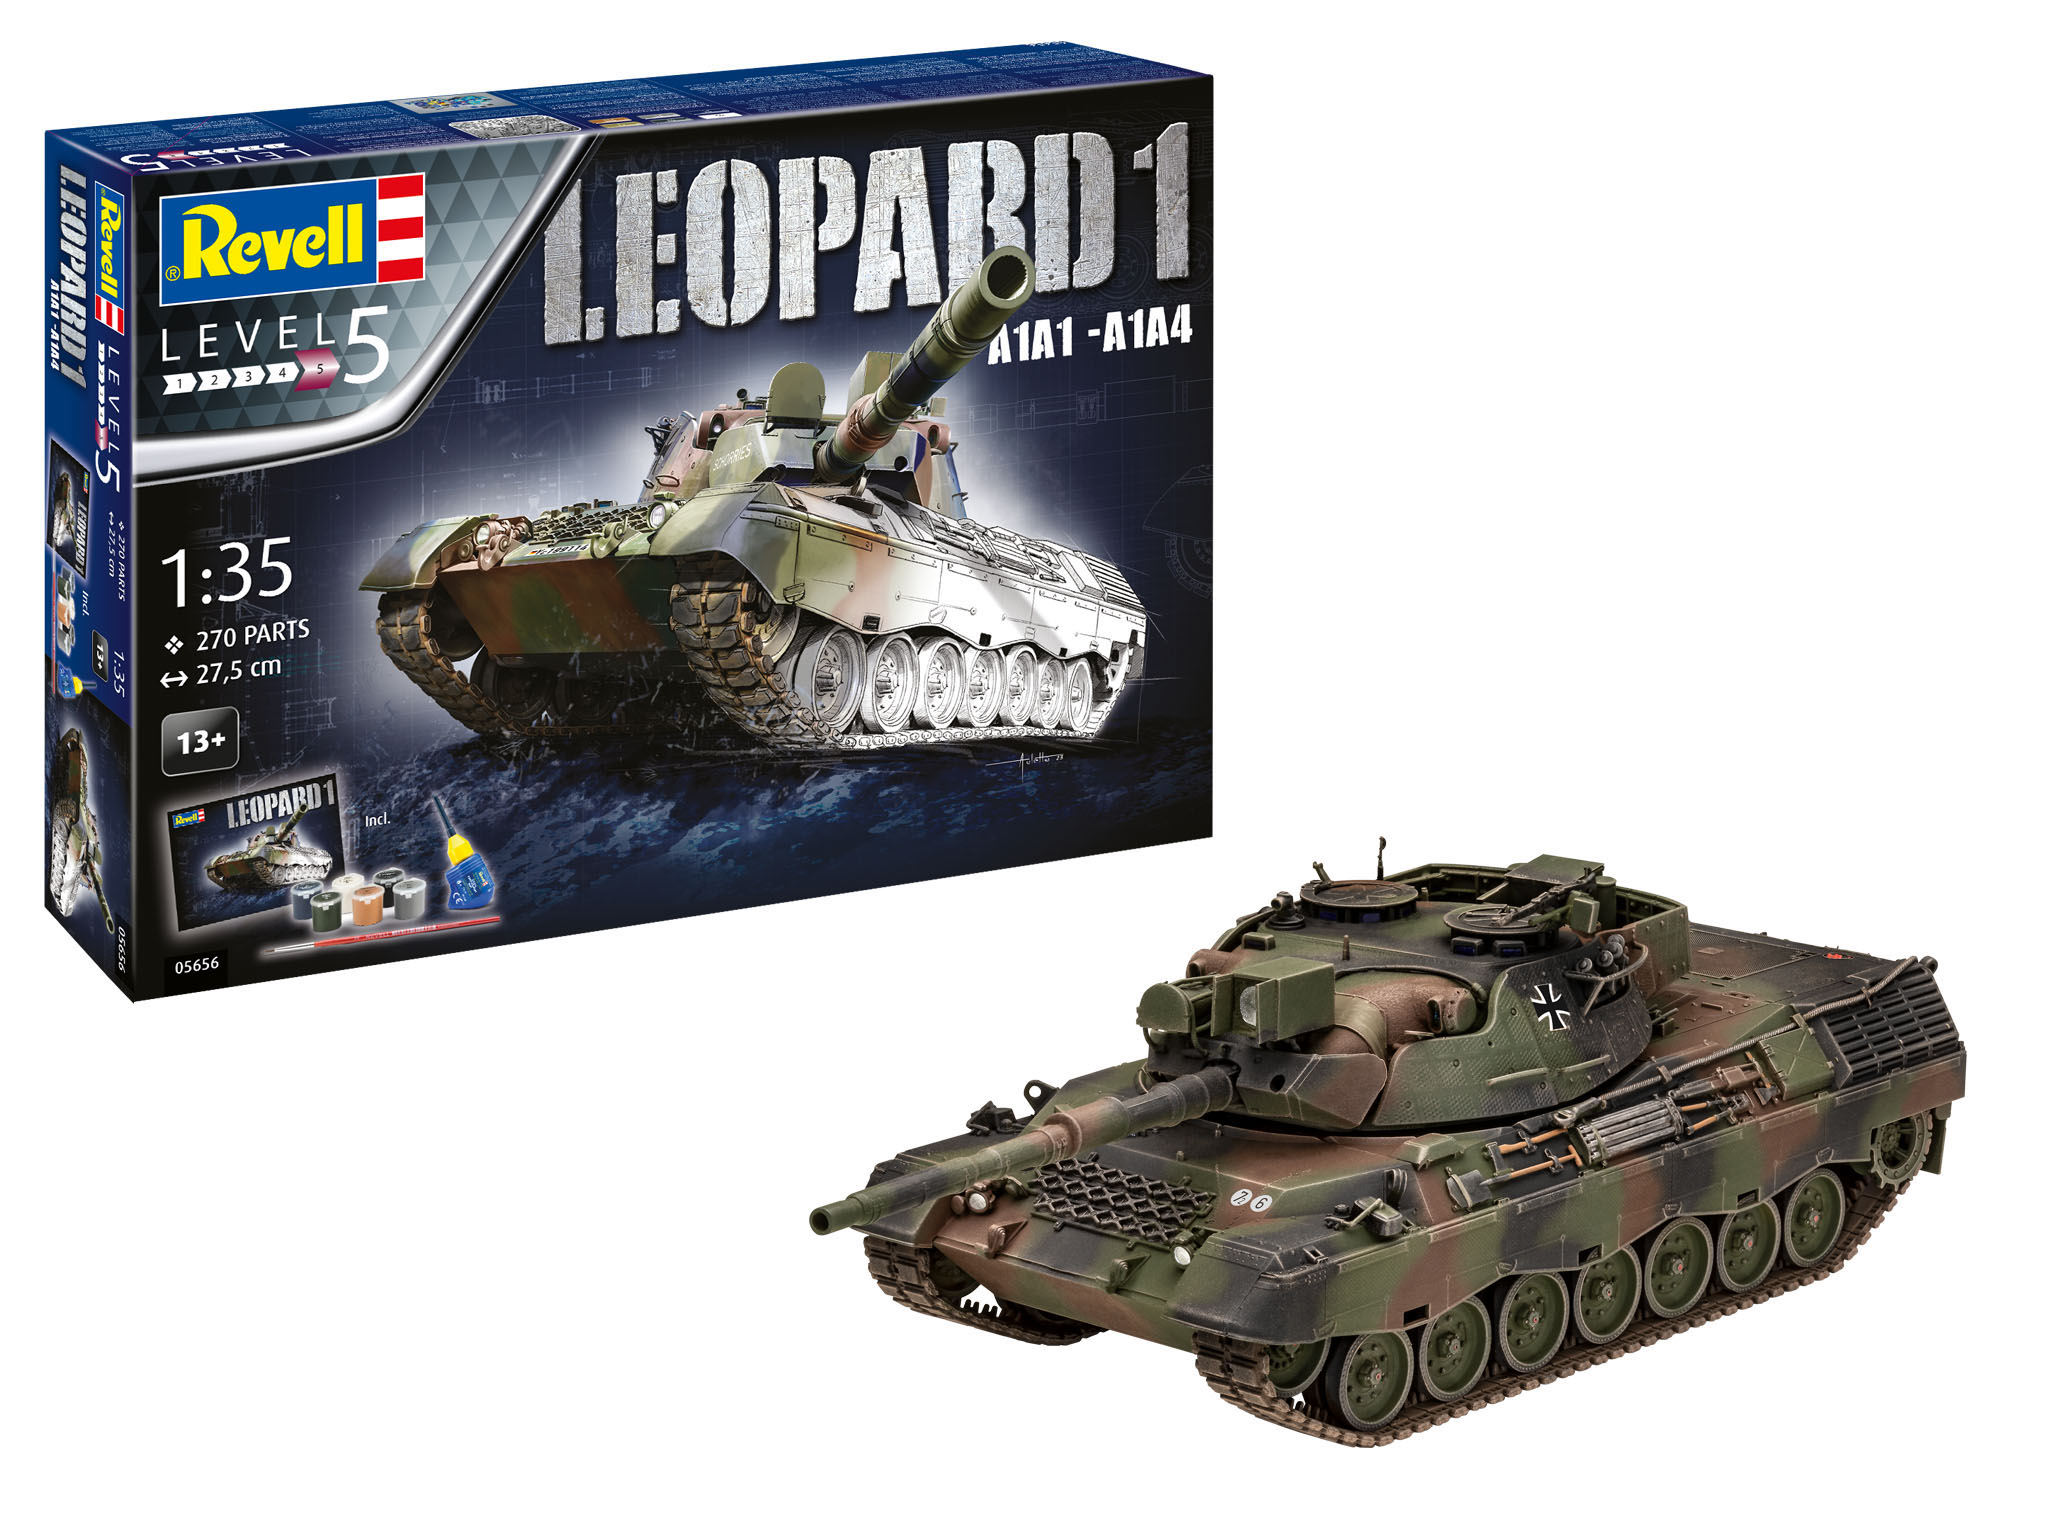 1:35 Geschenkset Leopard 1 A1A1 - A1A4